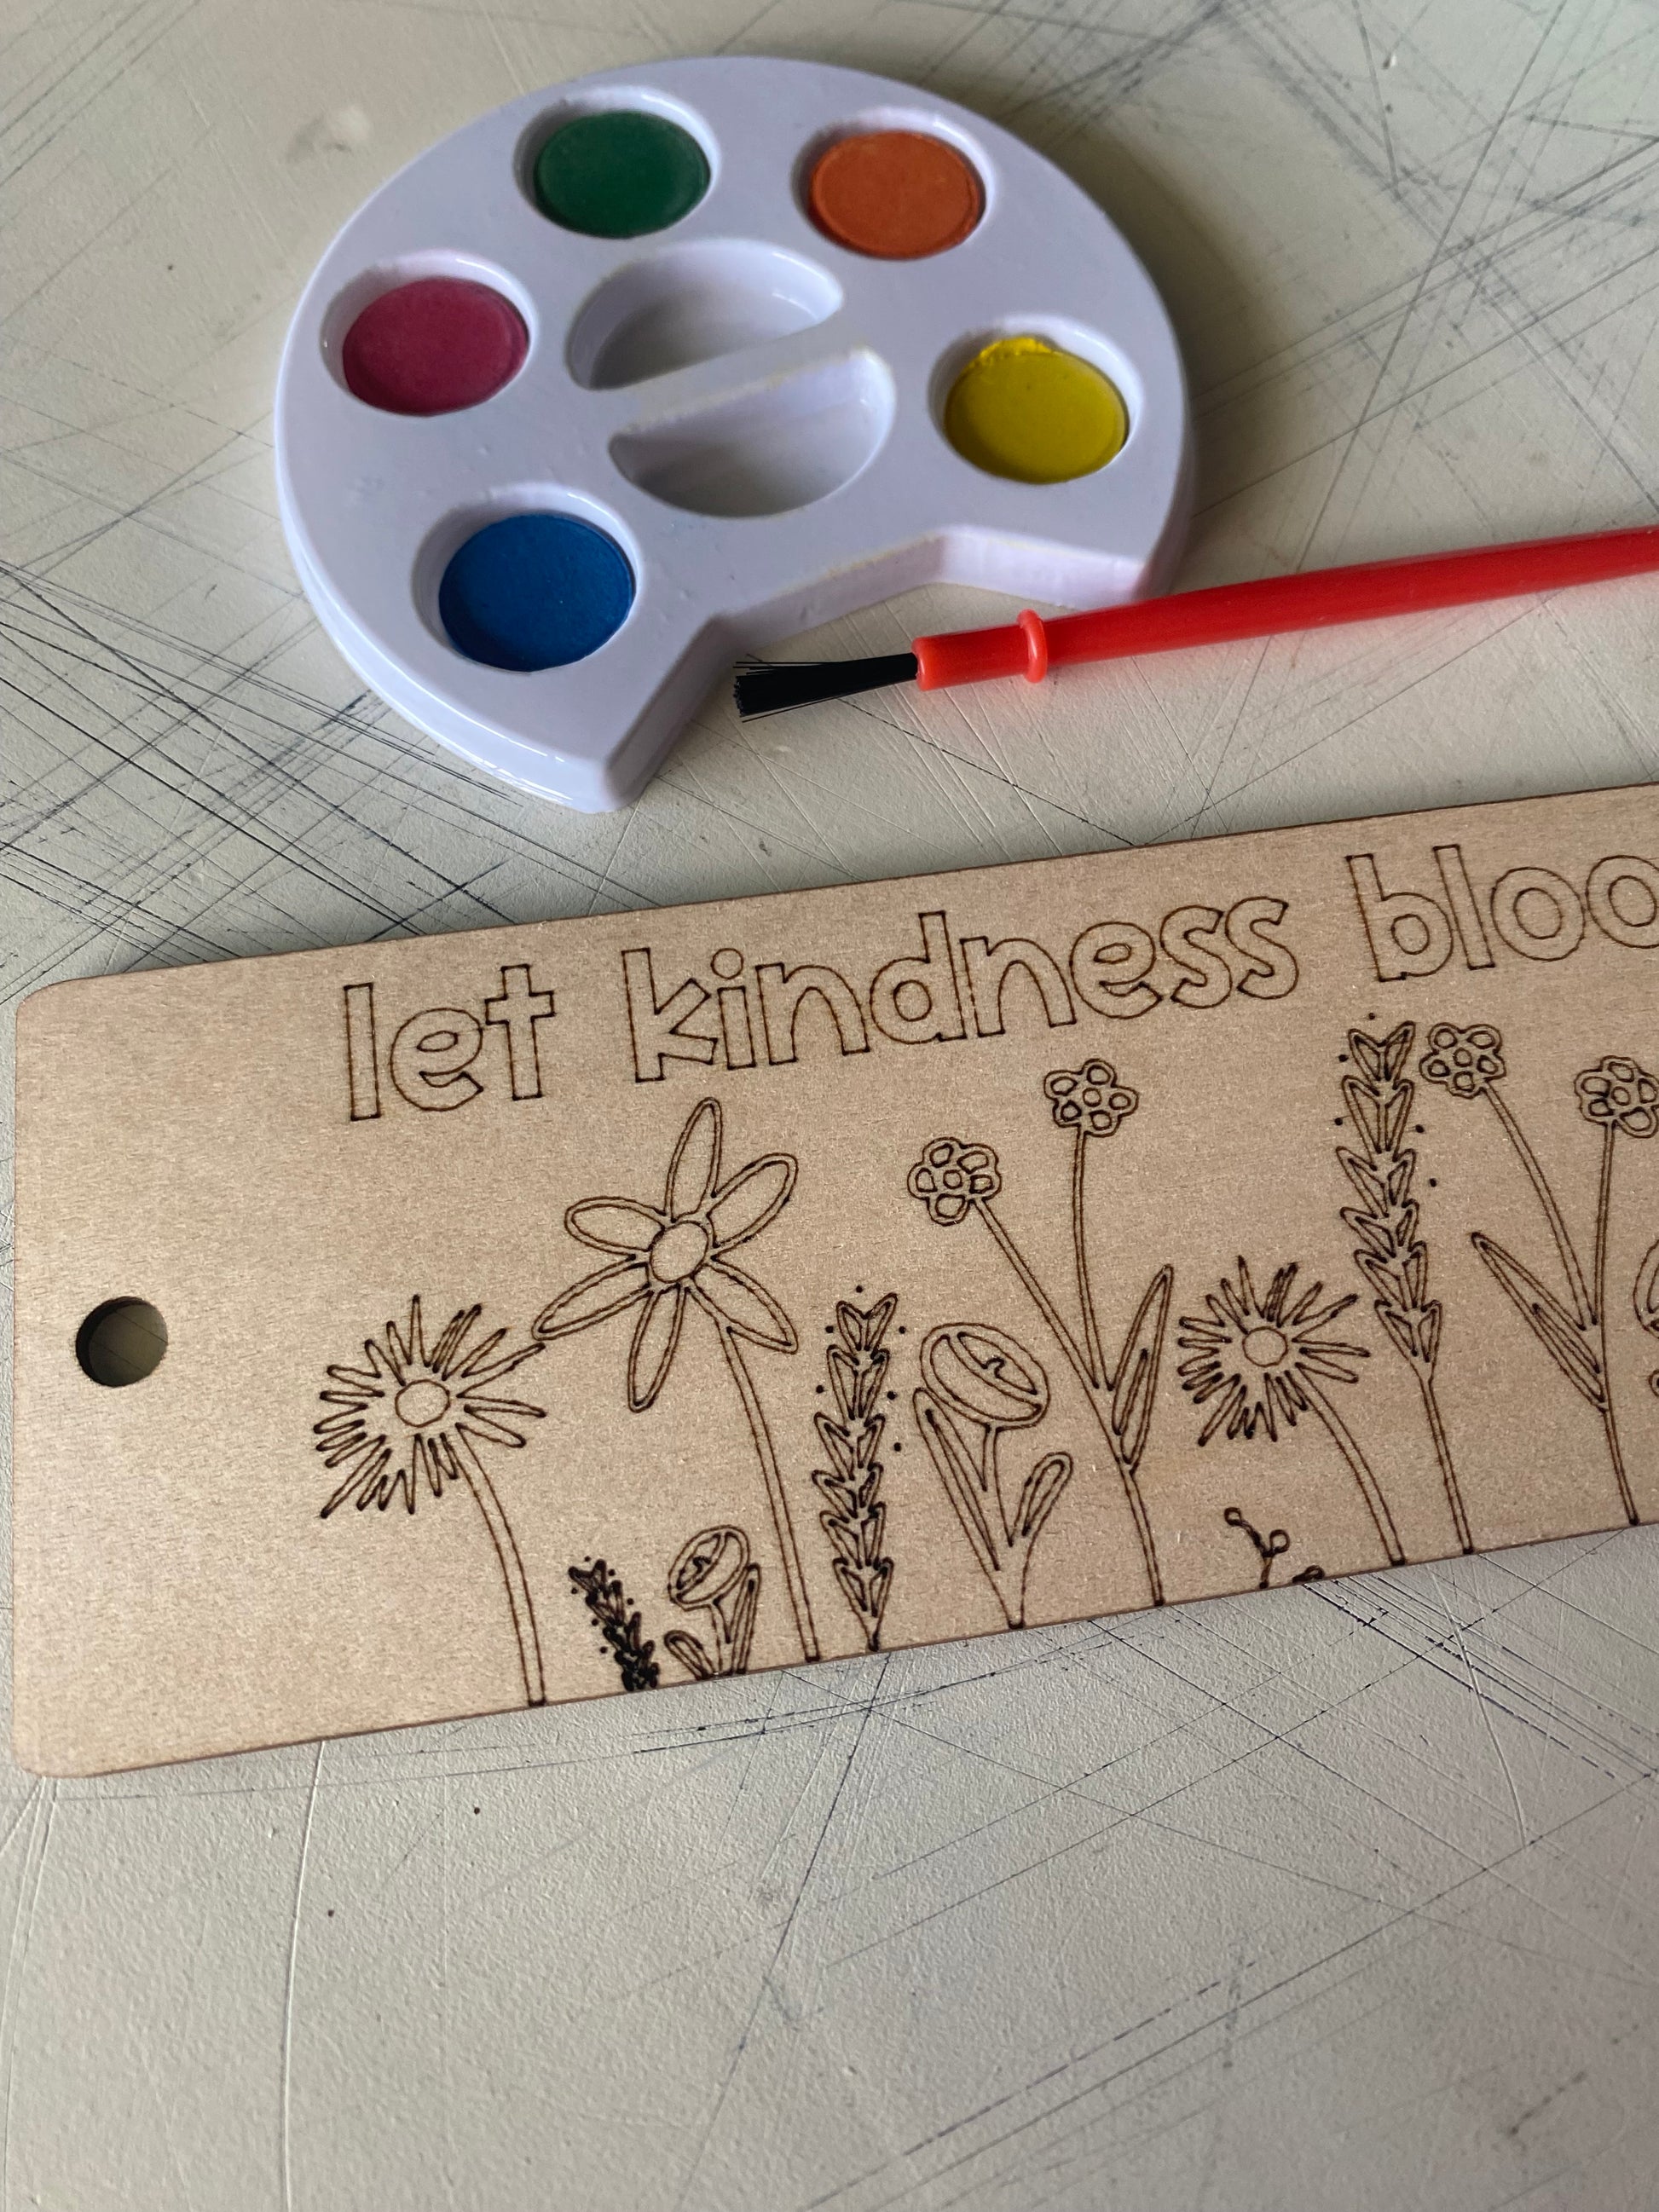 Let kindness bloom - bookmark craft kit - Novotny Designs